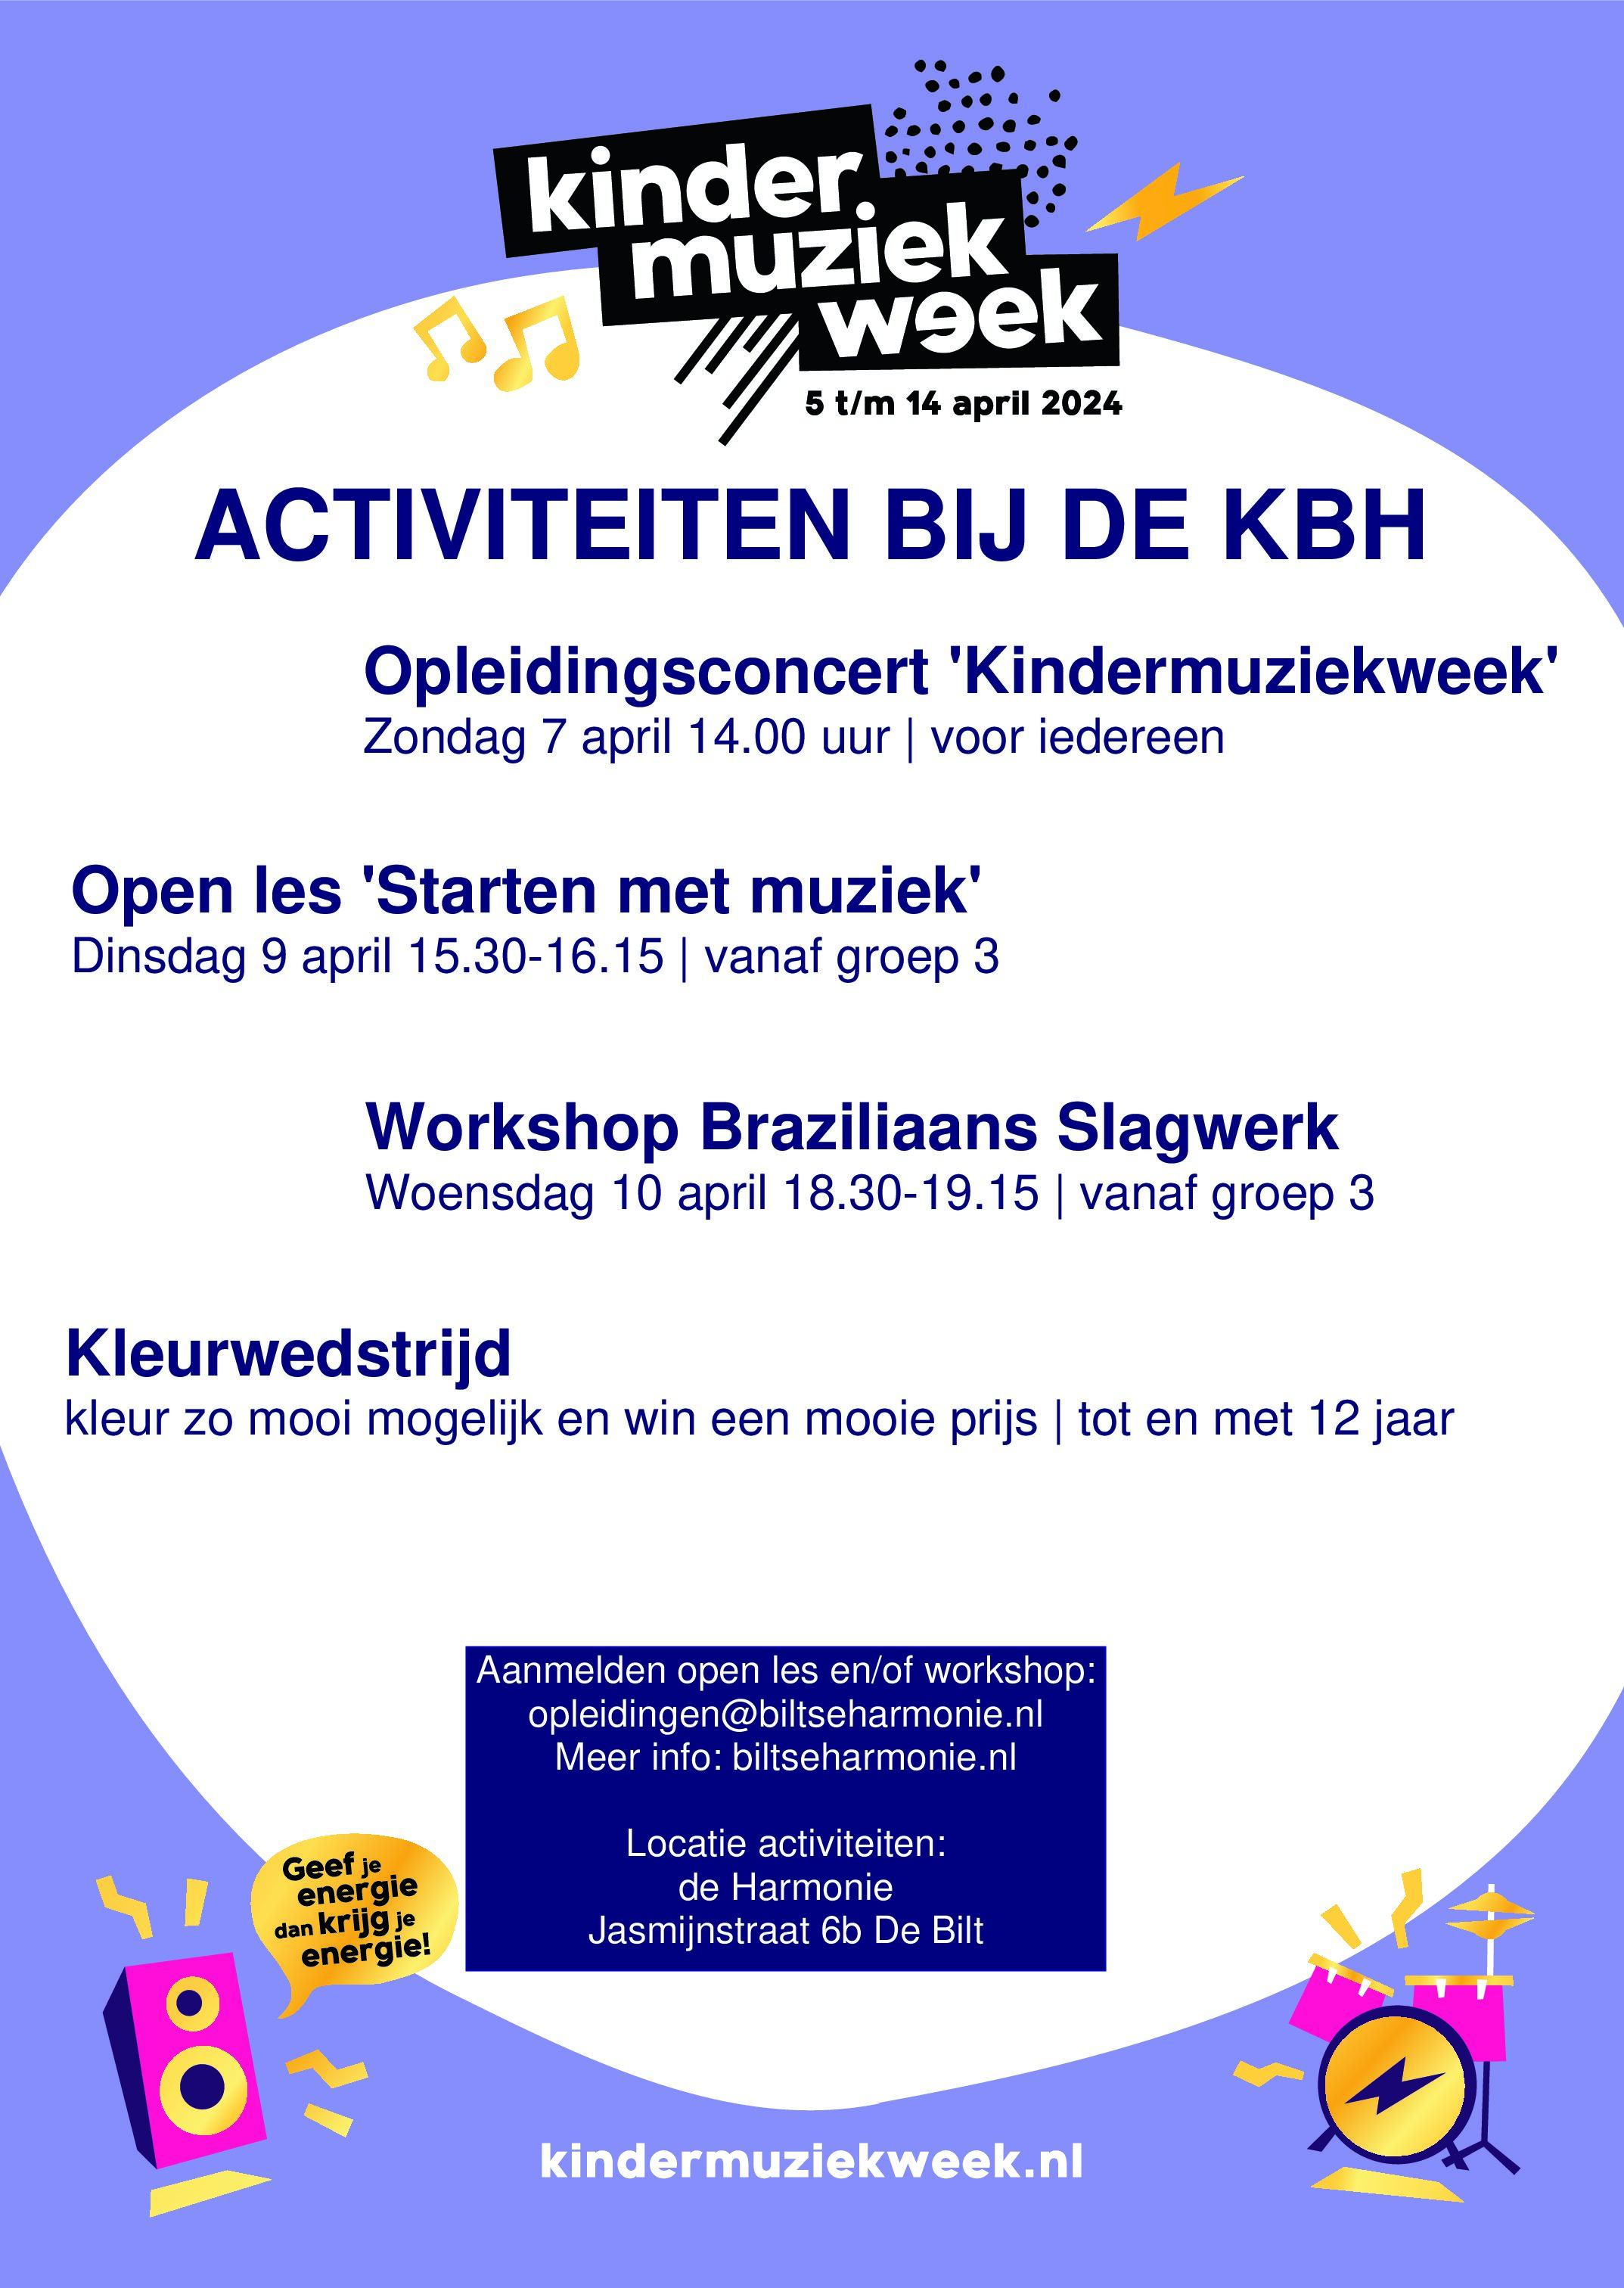 Kom meedoen en luisteren tijdens de Kindermuziekweek bij de KBH!